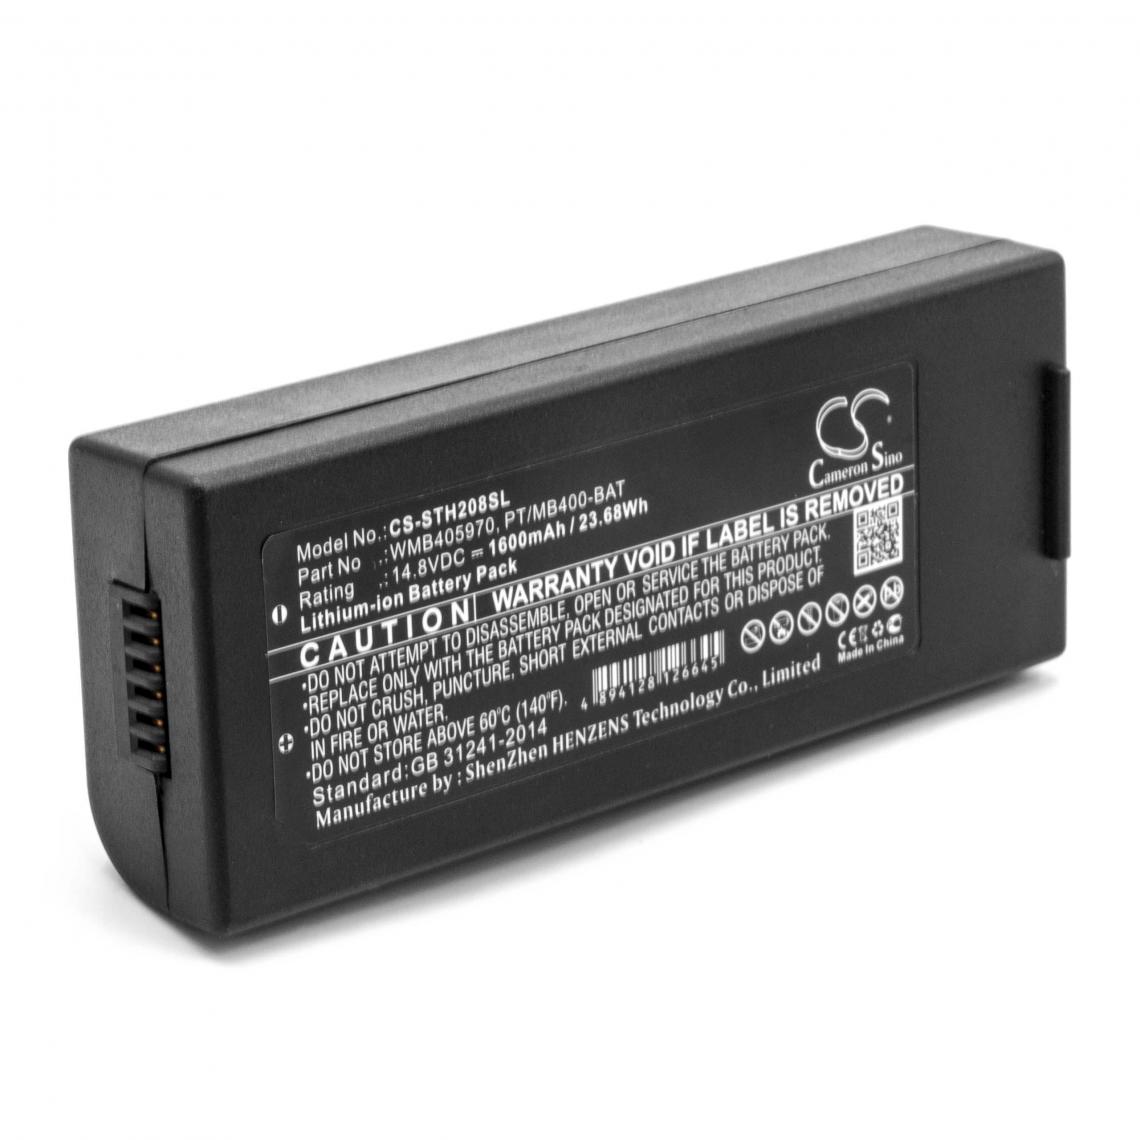 Vhbw - vhbw Li-Ion batterie 1600mAh (14.8V) pour imprimante photocopieur scanner imprimante à étiquette comme PT/MB400-BAT, WMB405970 - Imprimante Jet d'encre